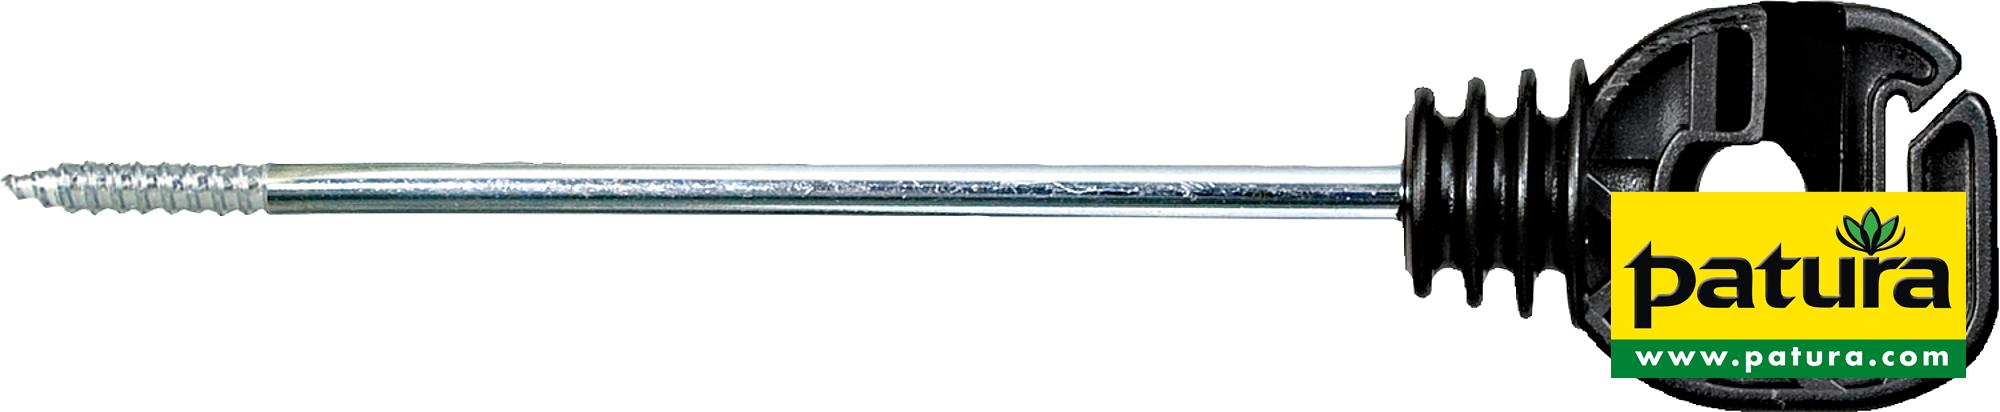 Seil- u. Bandisolator, langer Schaft, Länge 18 cm Holzgewinde(10 Stück / Pack)